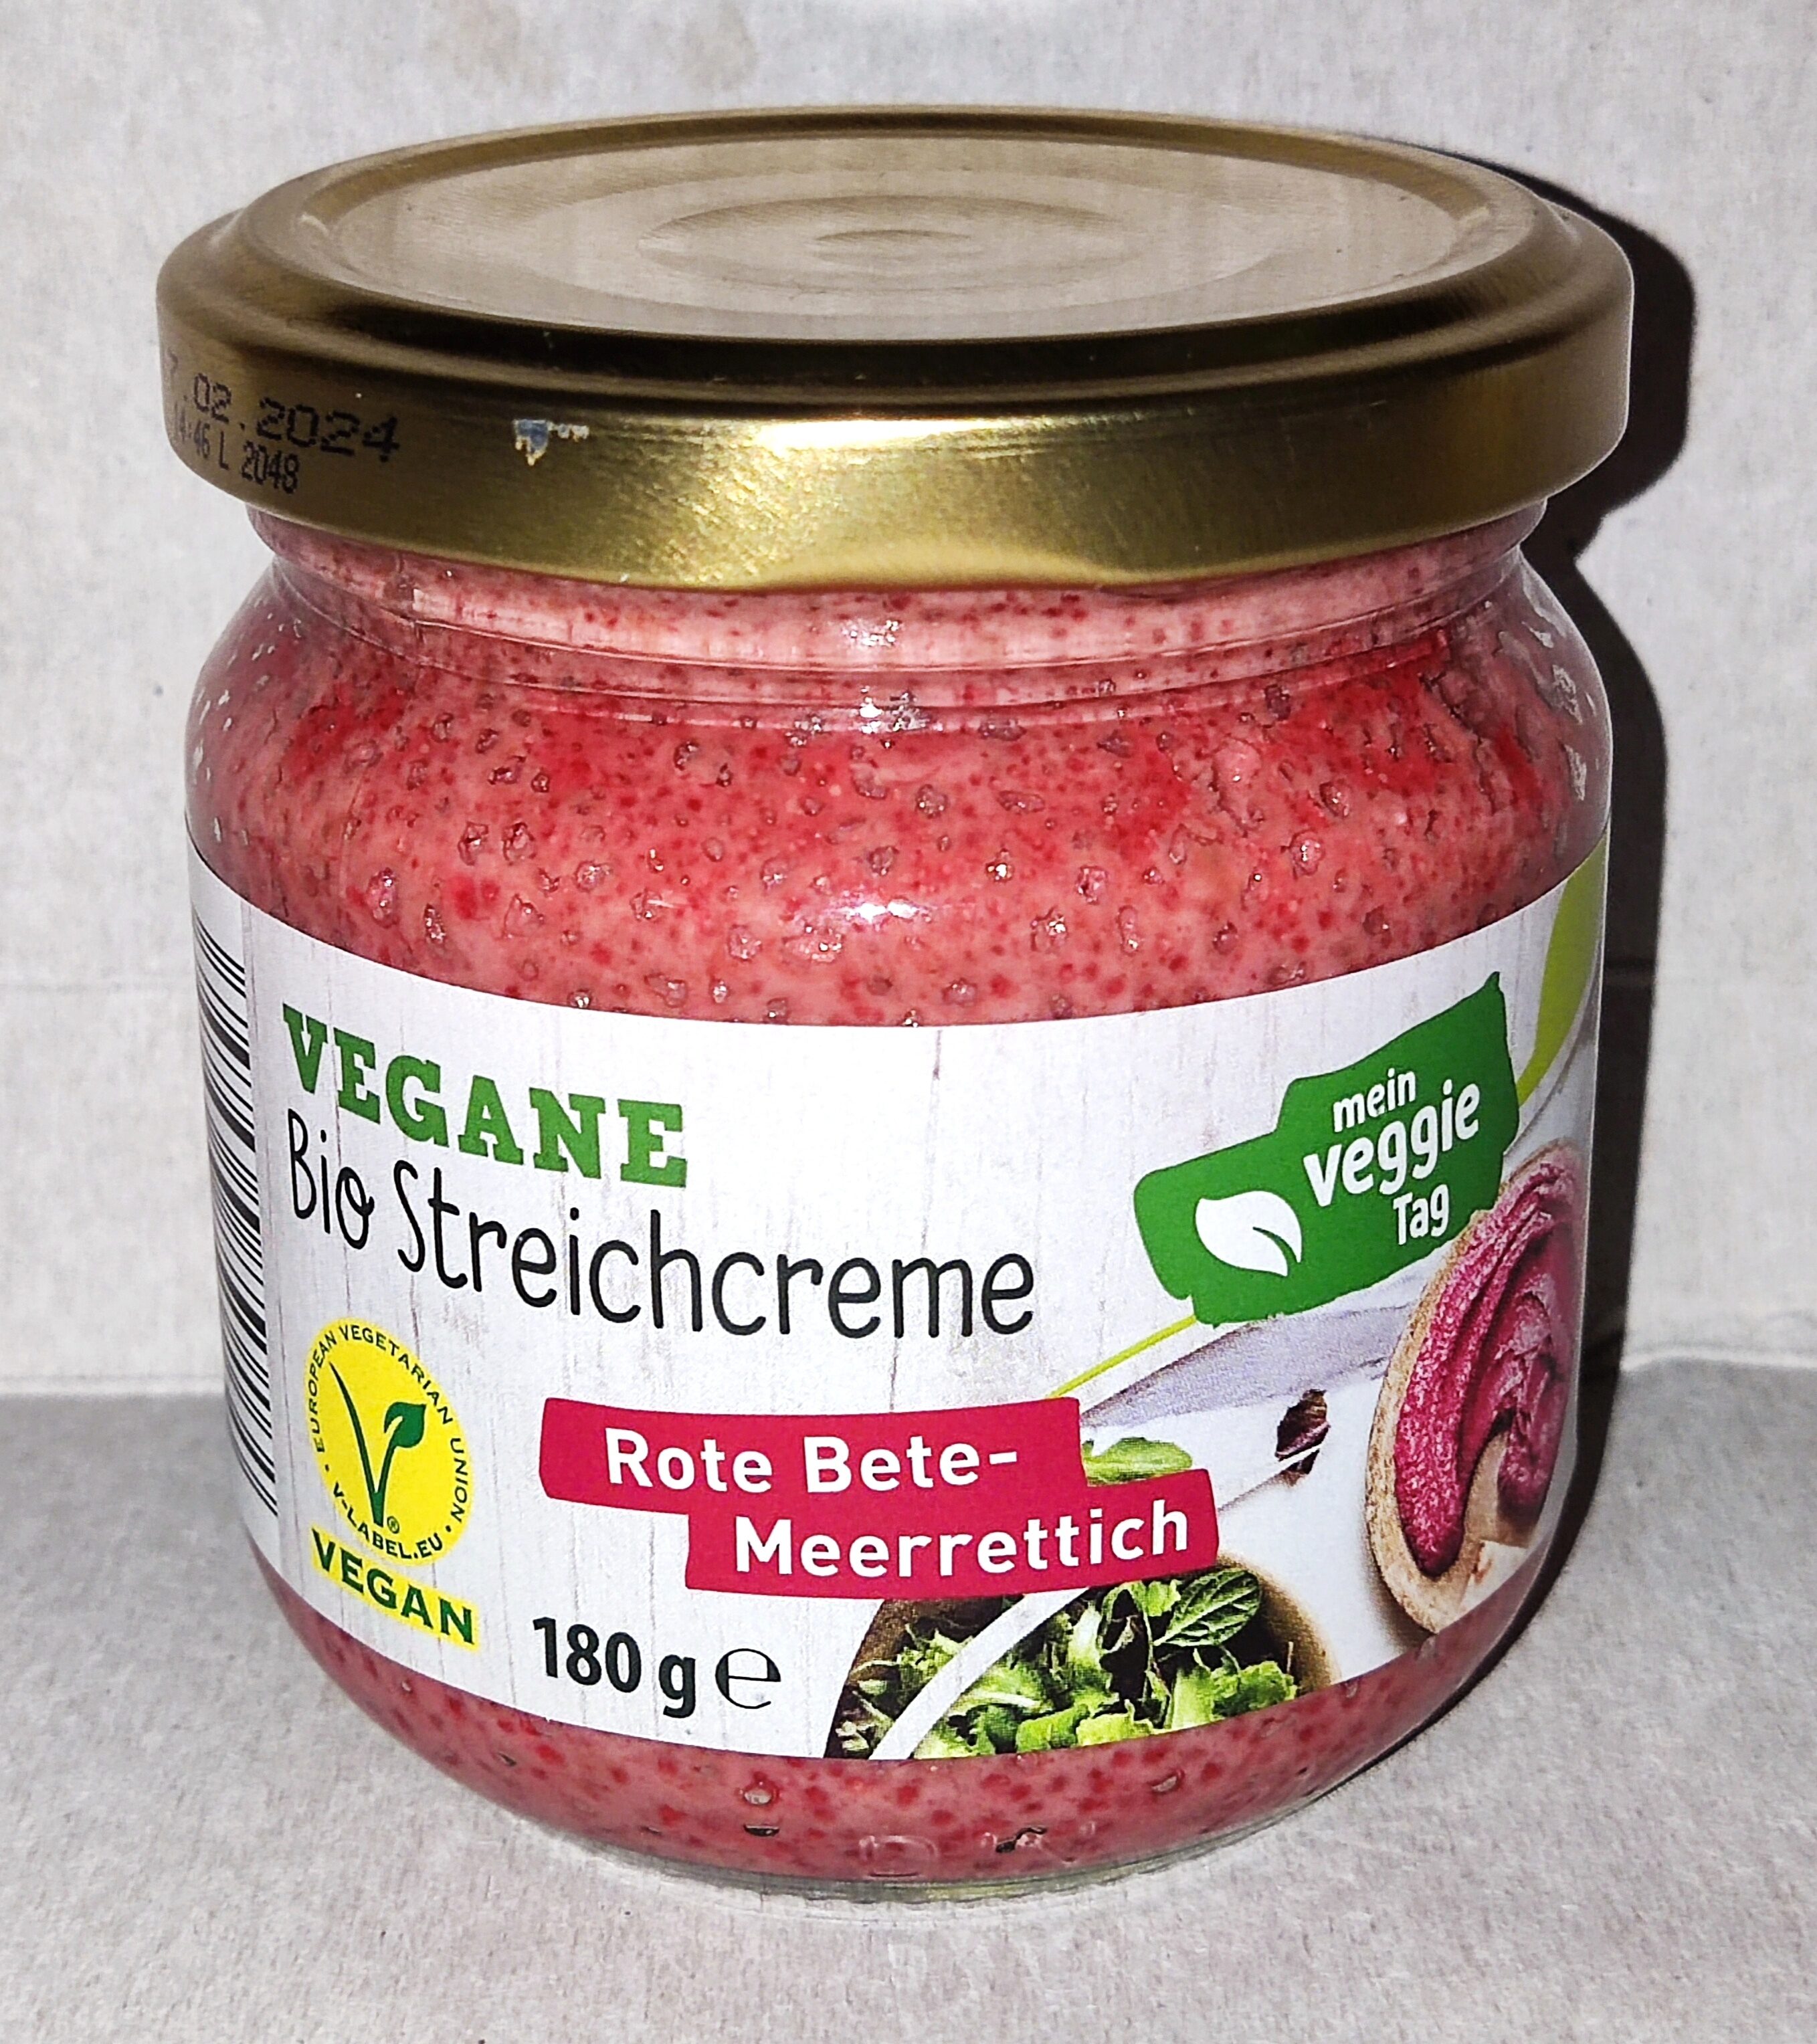 Vegane Bio-Streichcreme - Rote Bete-Meerrettich - Produkt